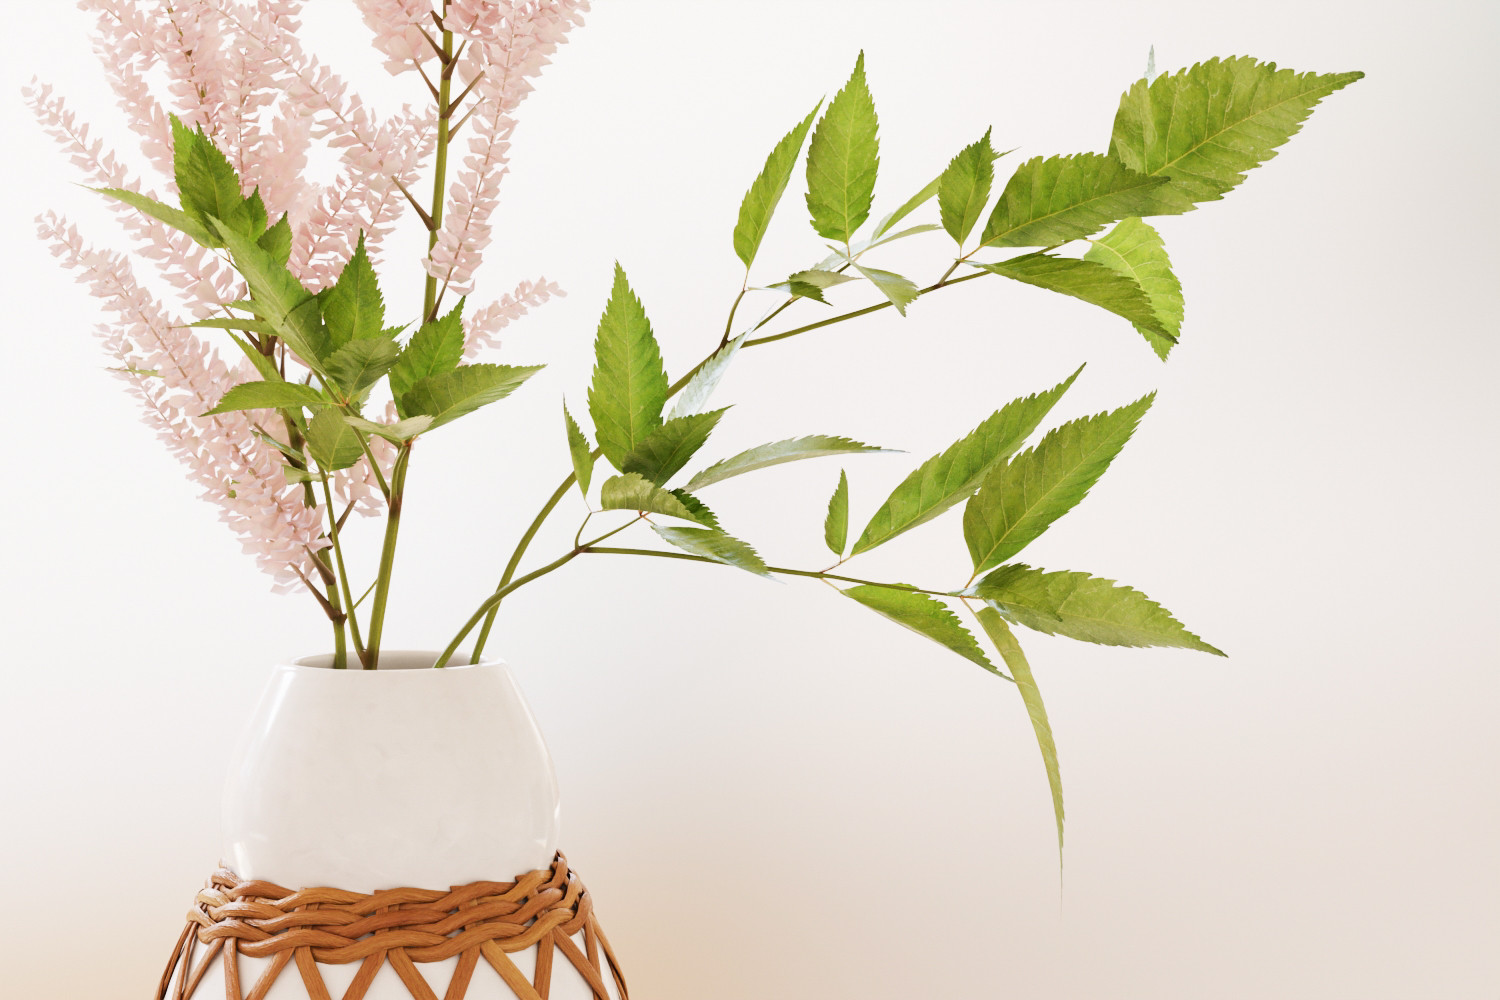 Spring plant in ceramic vase